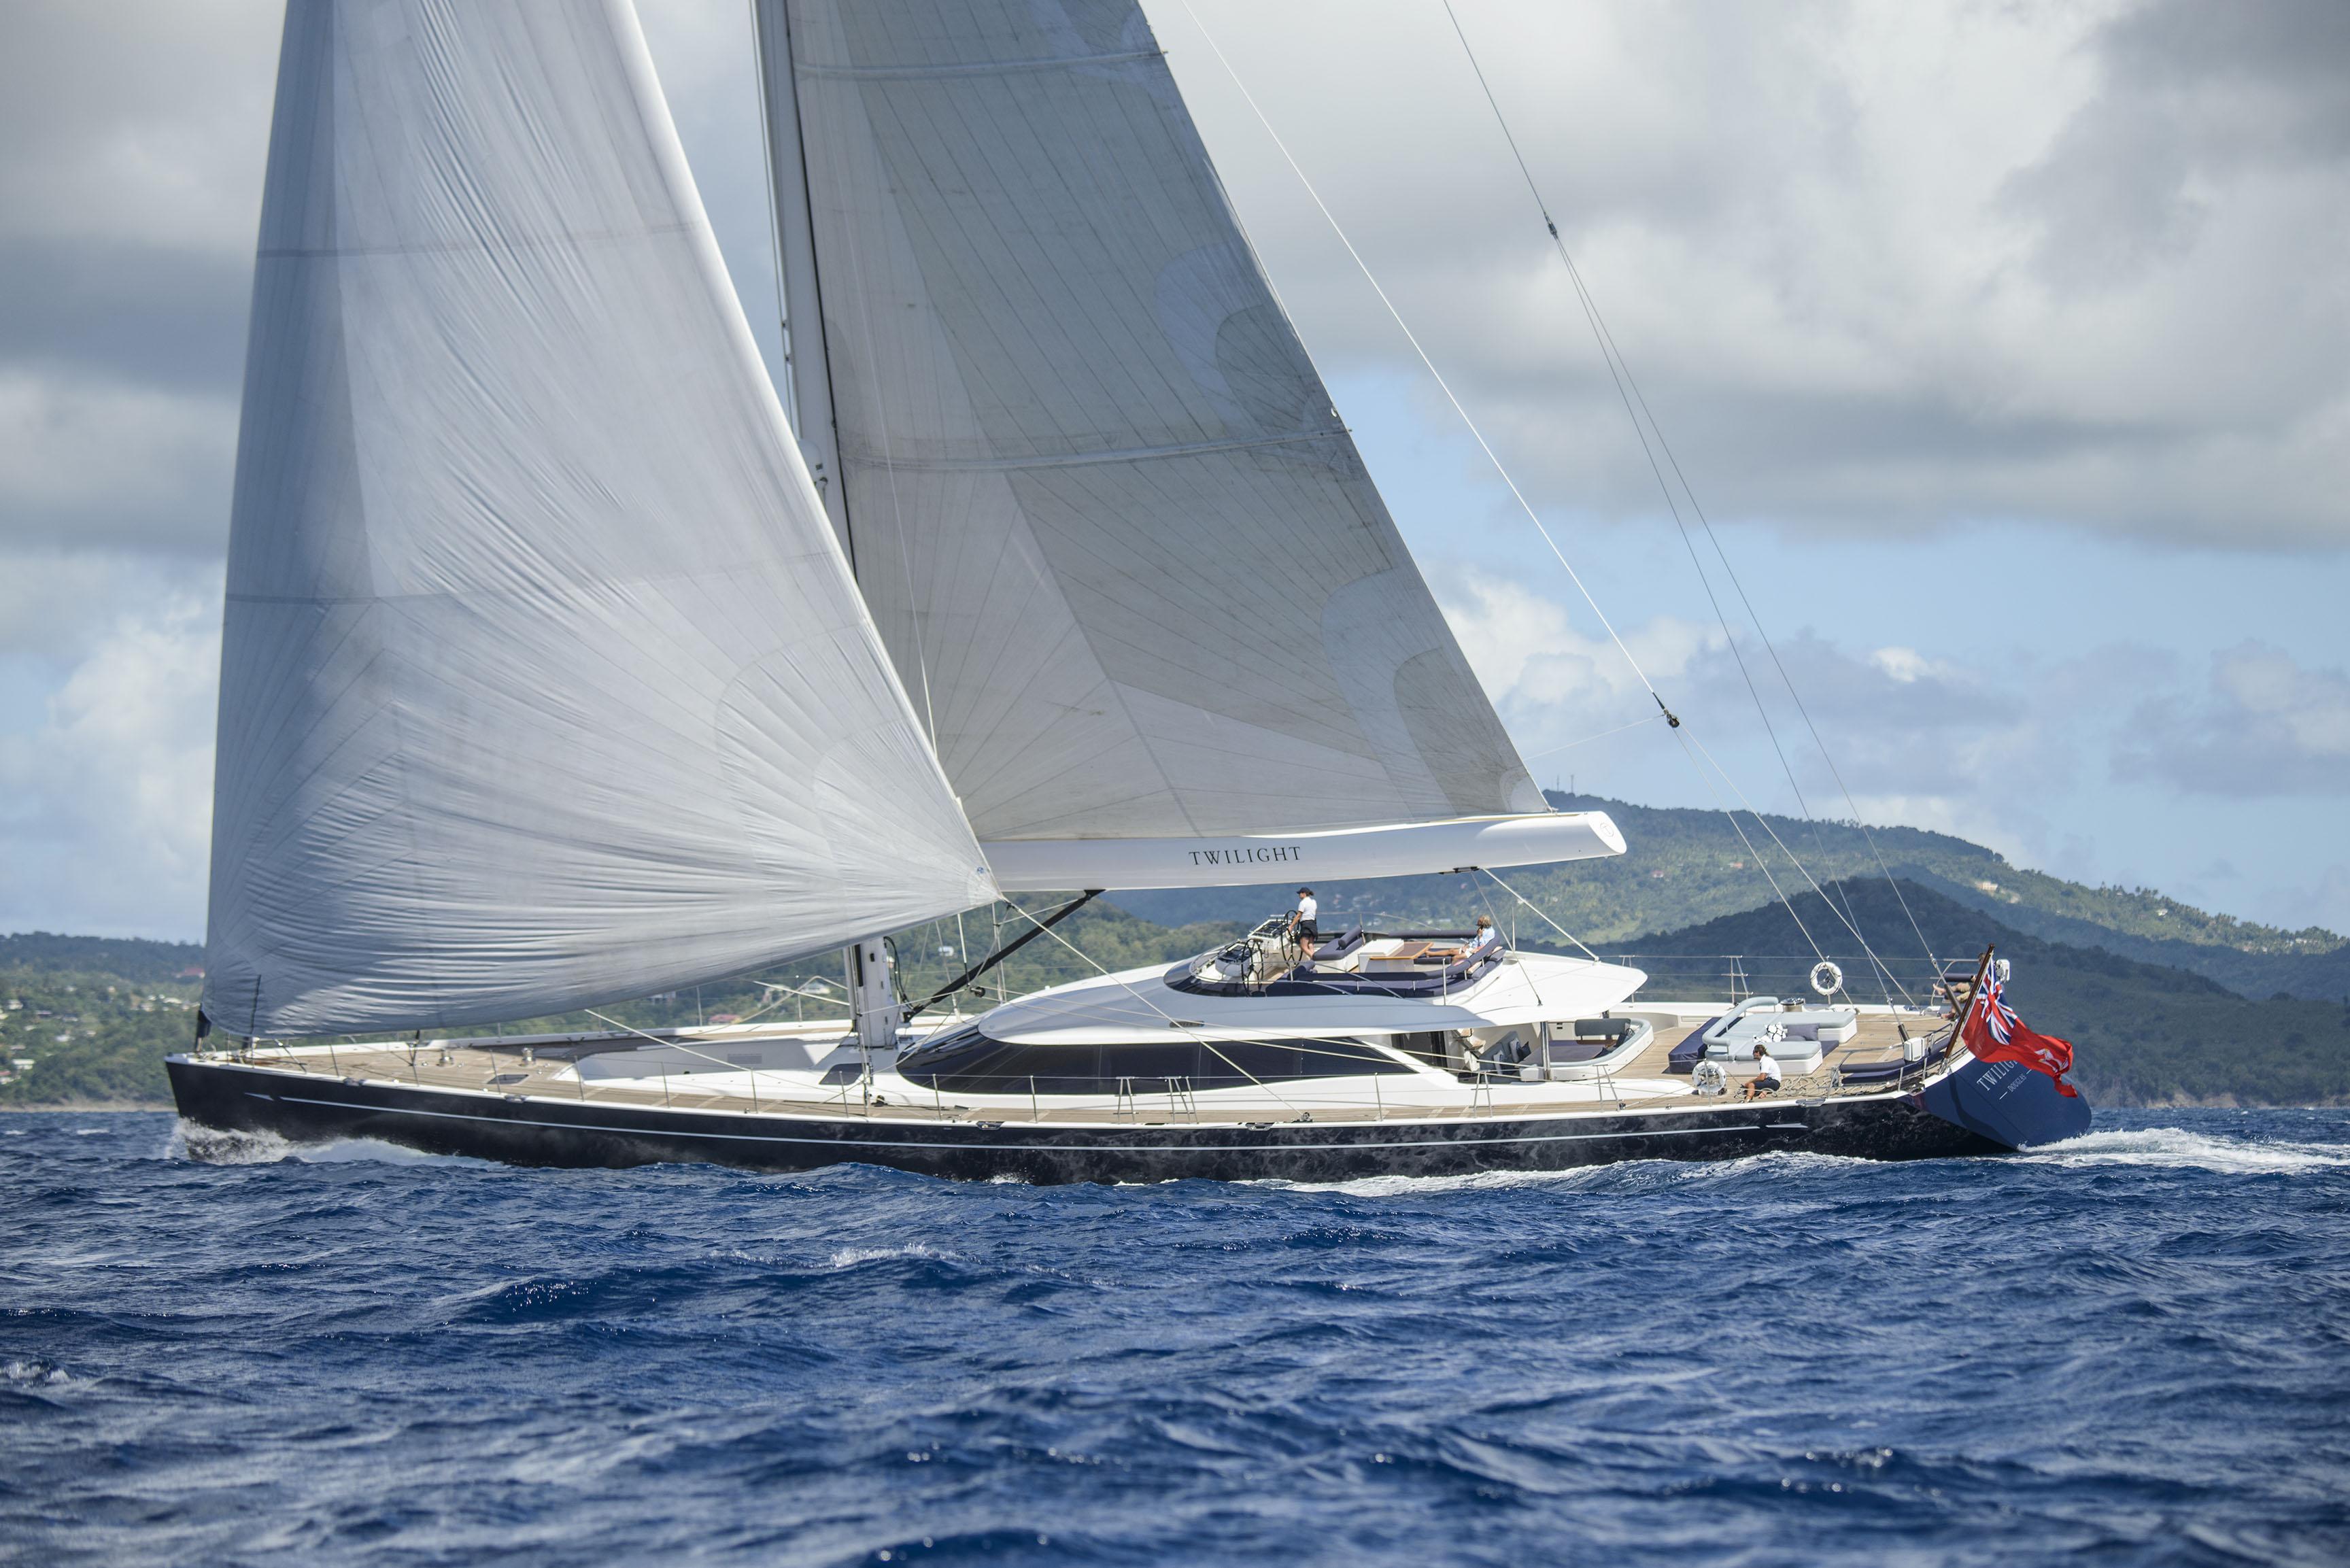 125 foot sailing yacht